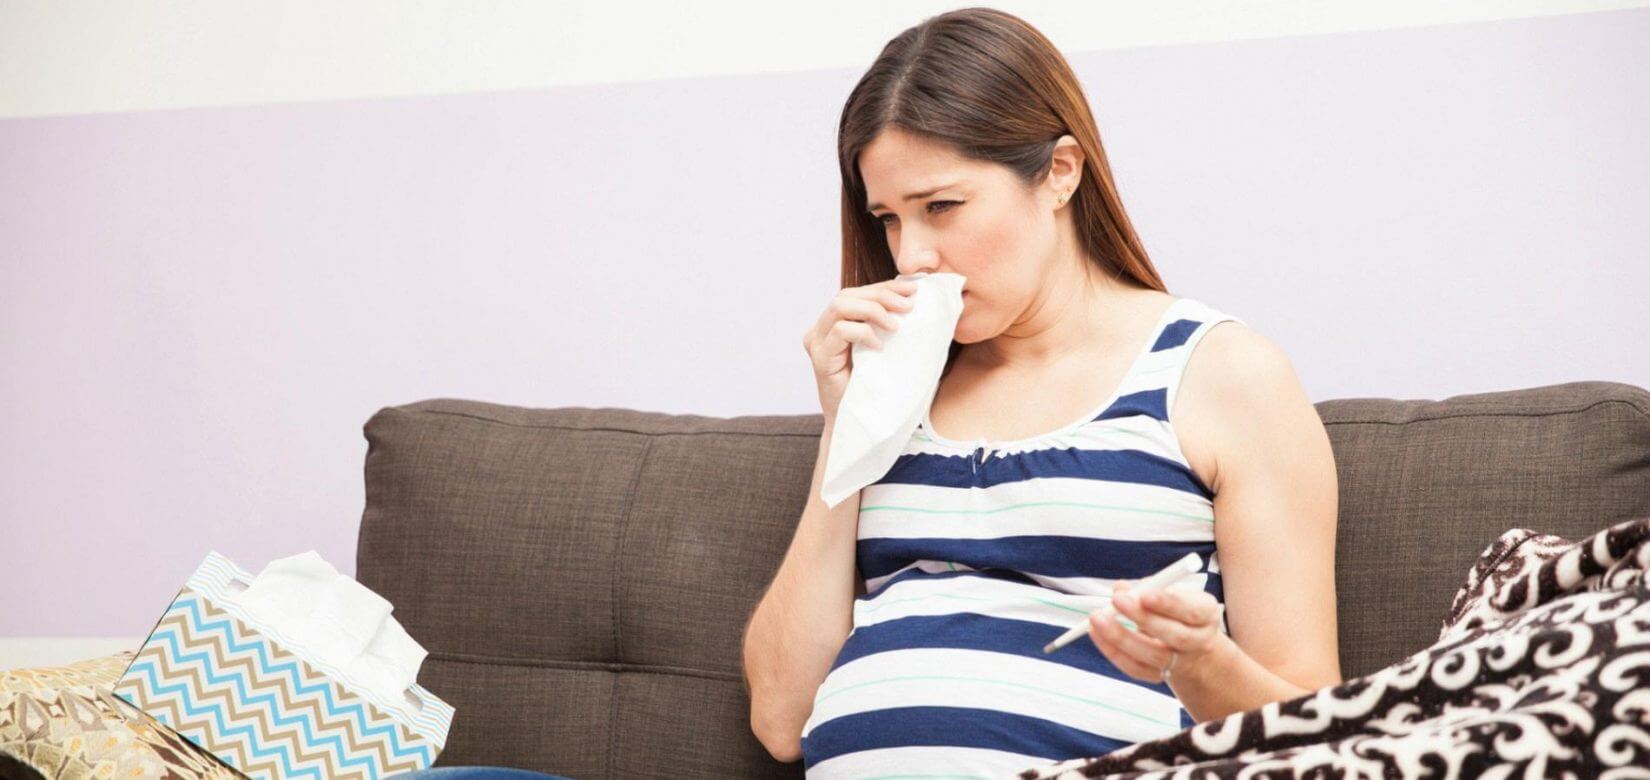 Έρευνα: Αυξημένος ο κίνδυνος αυτισμού μετά από γρίπη ή πνευμονία κατά τη διάρκεια της εγκυμοσύνης